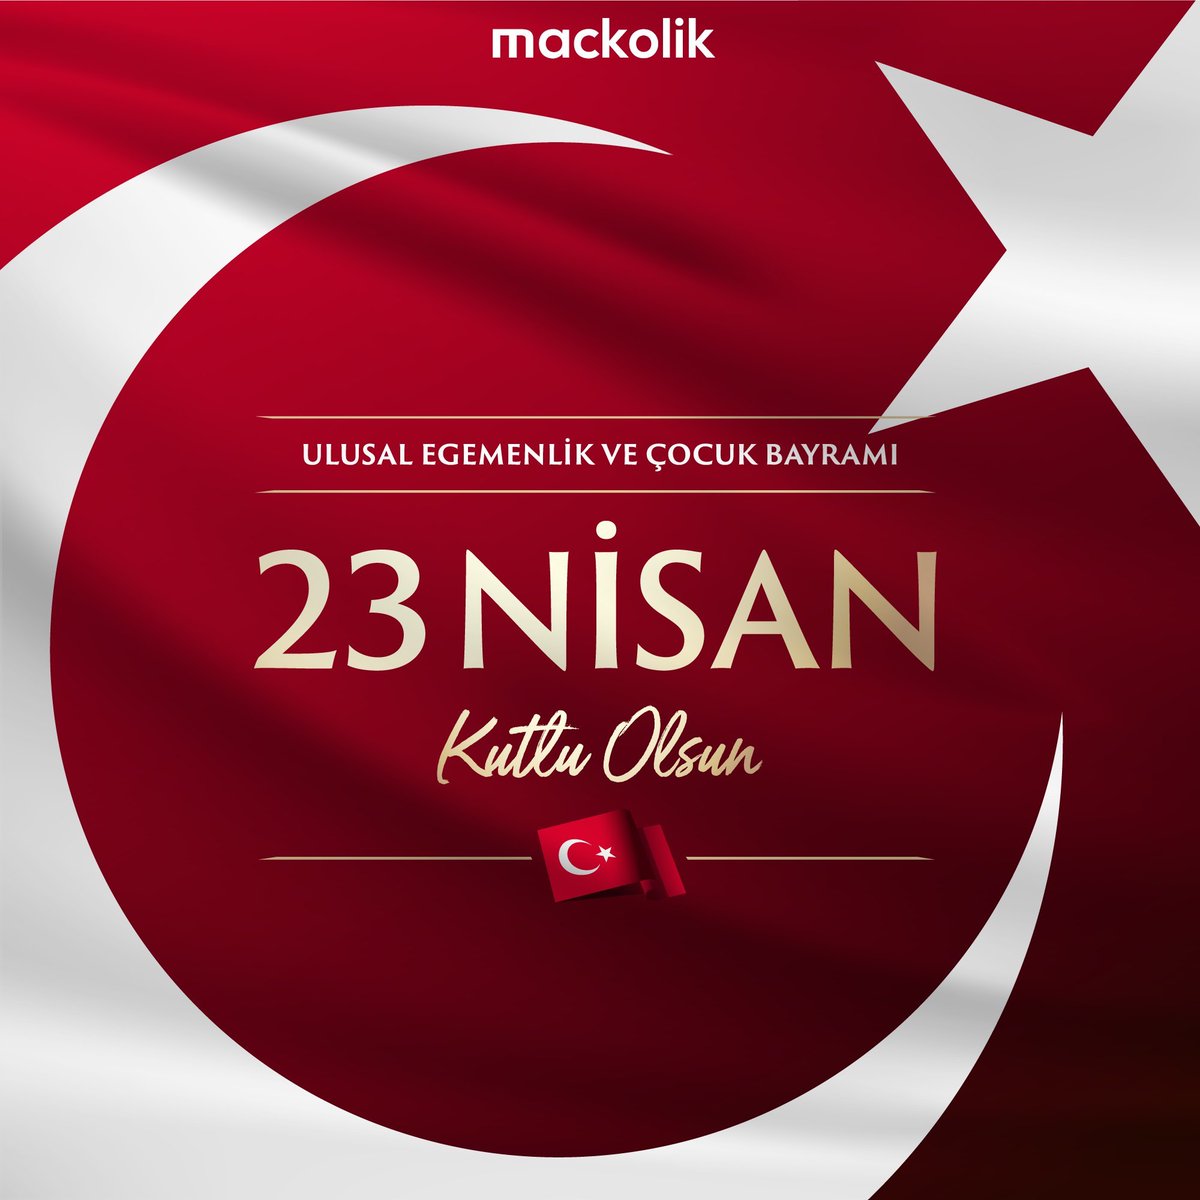 🇹🇷 23 Nisan Ulusal Egemenlik ve Çocuk Bayramımız kutlu olsun!